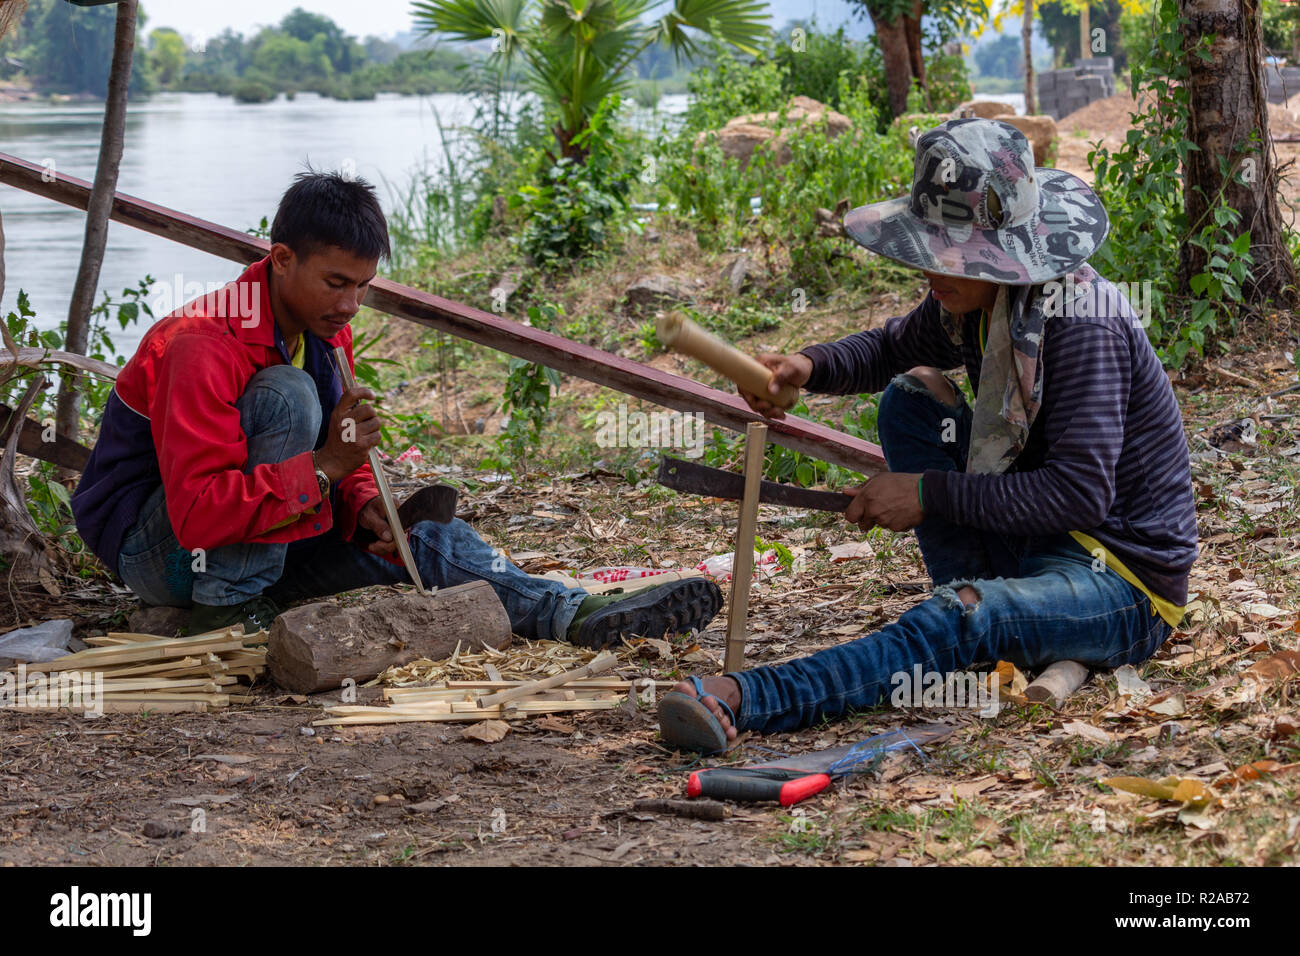 Don Det, Laos - Abril 24, 2018: los hombres locales haciendo trabajos manuales con bambú cerca del río Mekong Foto de stock